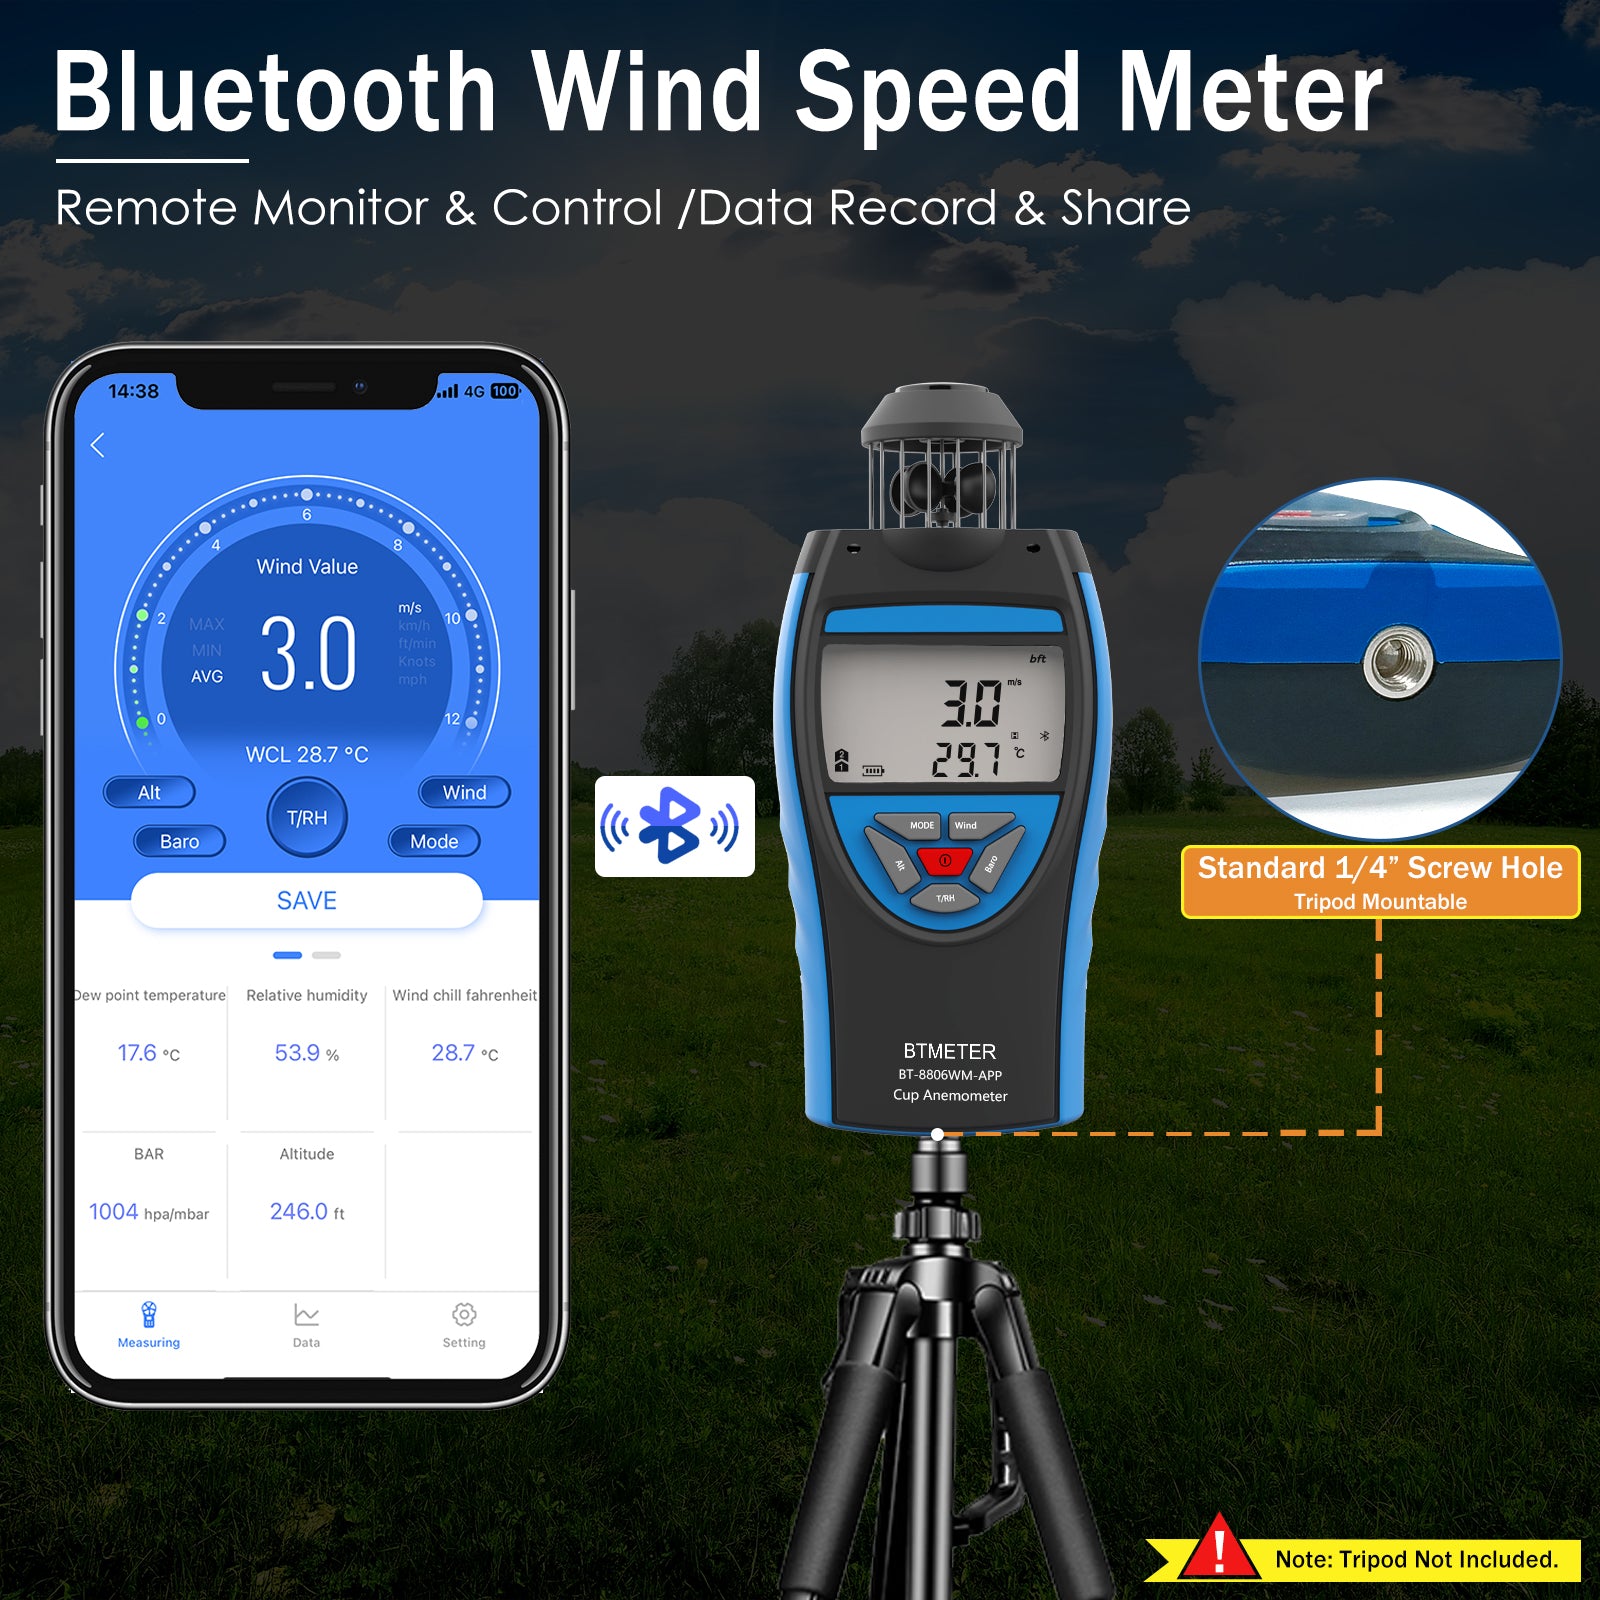 BTMETER BT-100-WM Anemometer 6 in 1 Wind Speed Meter